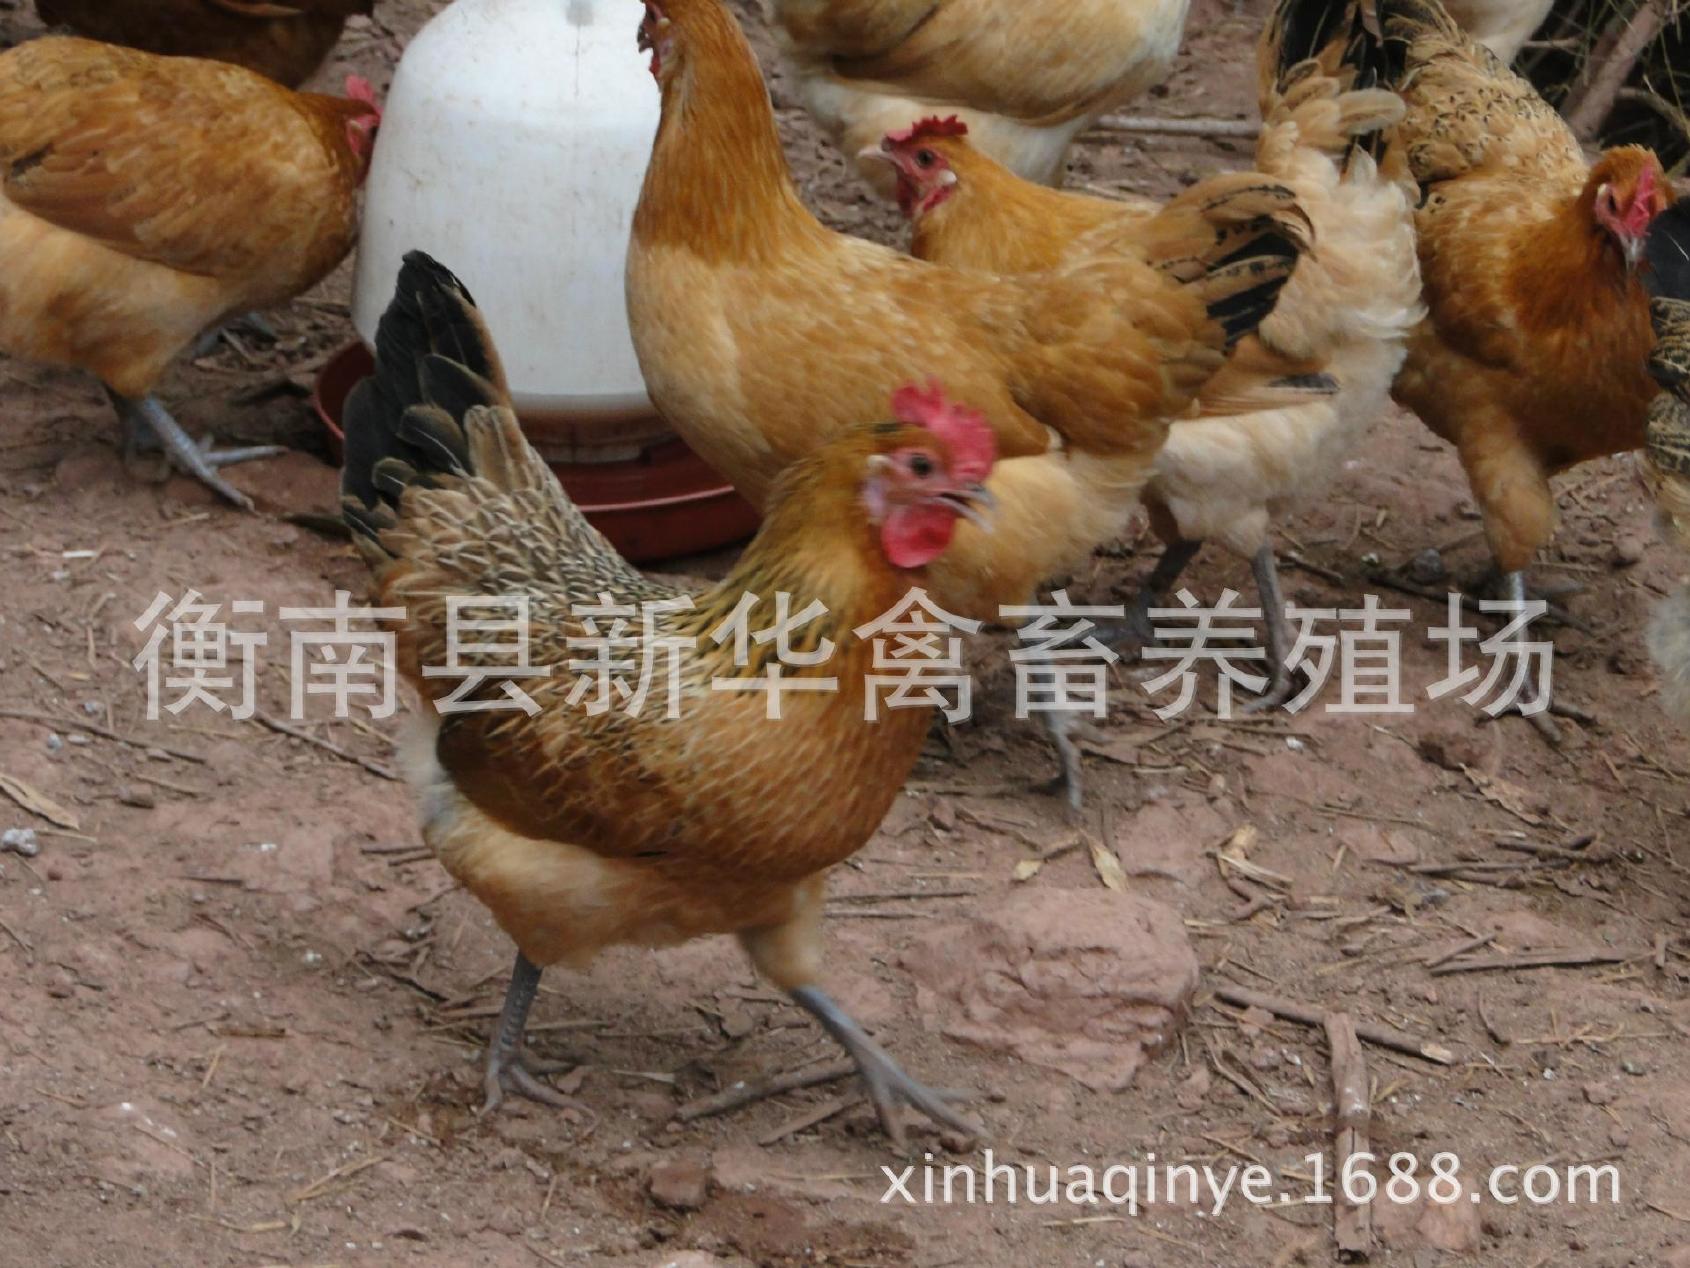 湖南衡南县星华禽业厂家直销大量供应优质青脚土鸡苗混合苗示例图2